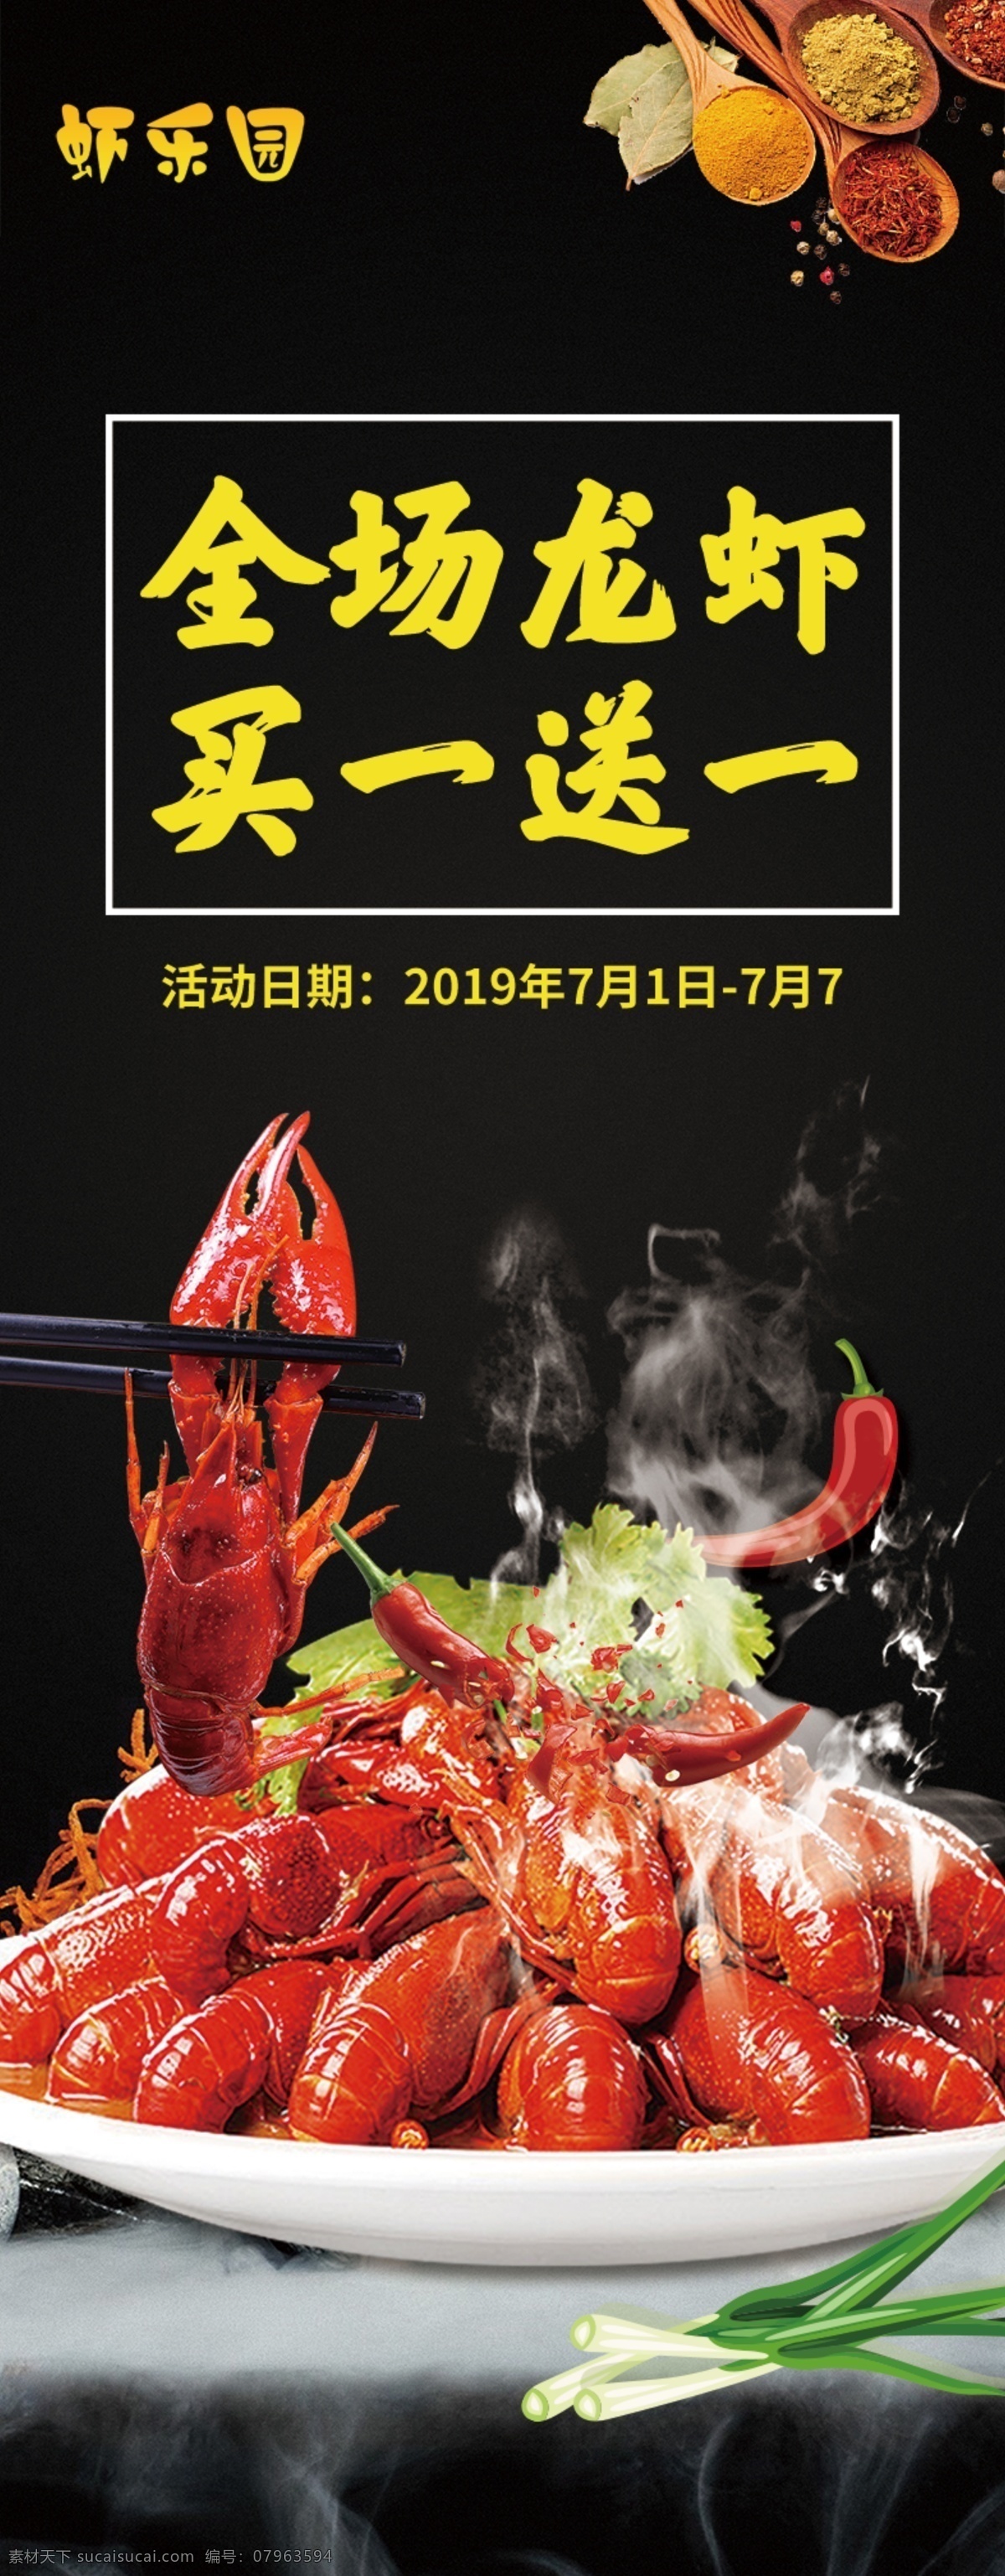 龙虾 活动 海报 买 送 买一送 麻辣小龙虾